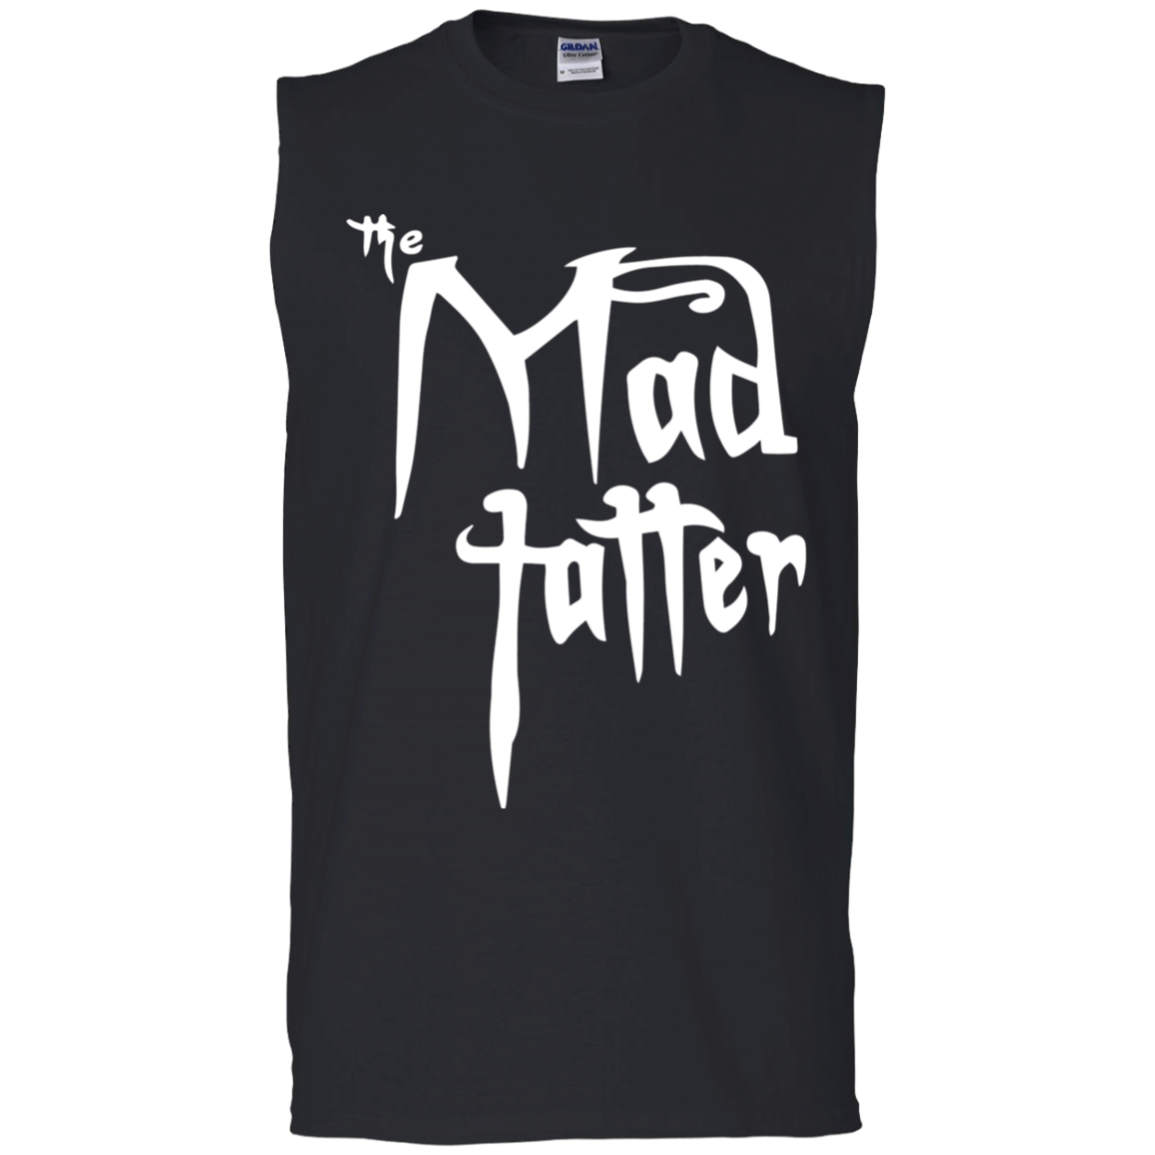 Men's Mad Tatter Sleeveless T-Shirt - White Logo